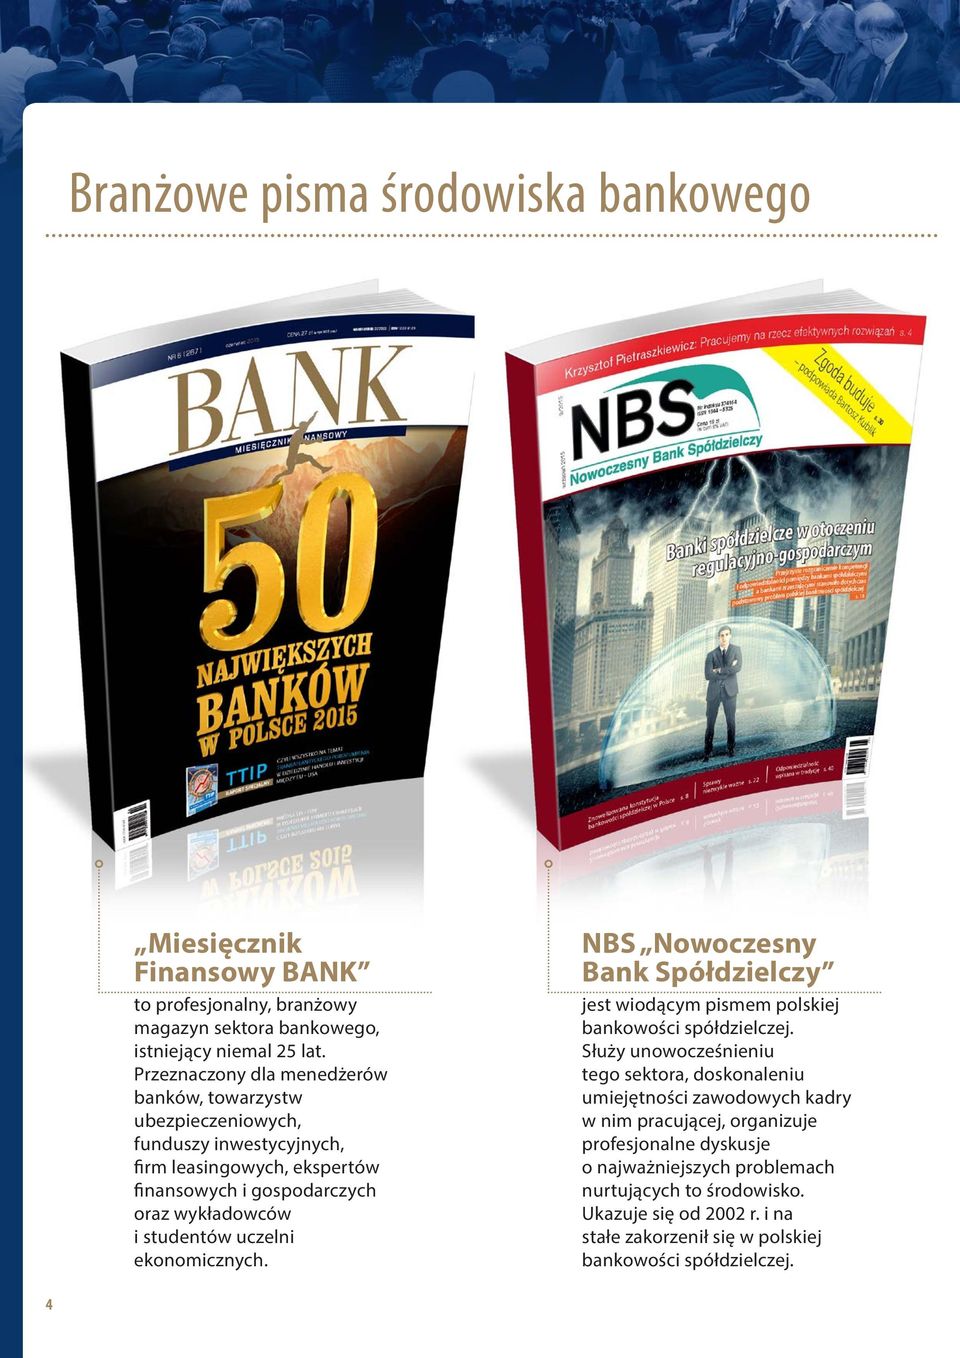 uczelni ekonomicznych. NBS Nowoczesny Bank Spółdzielczy jest wiodącym pismem polskiej bankowości spółdzielczej.